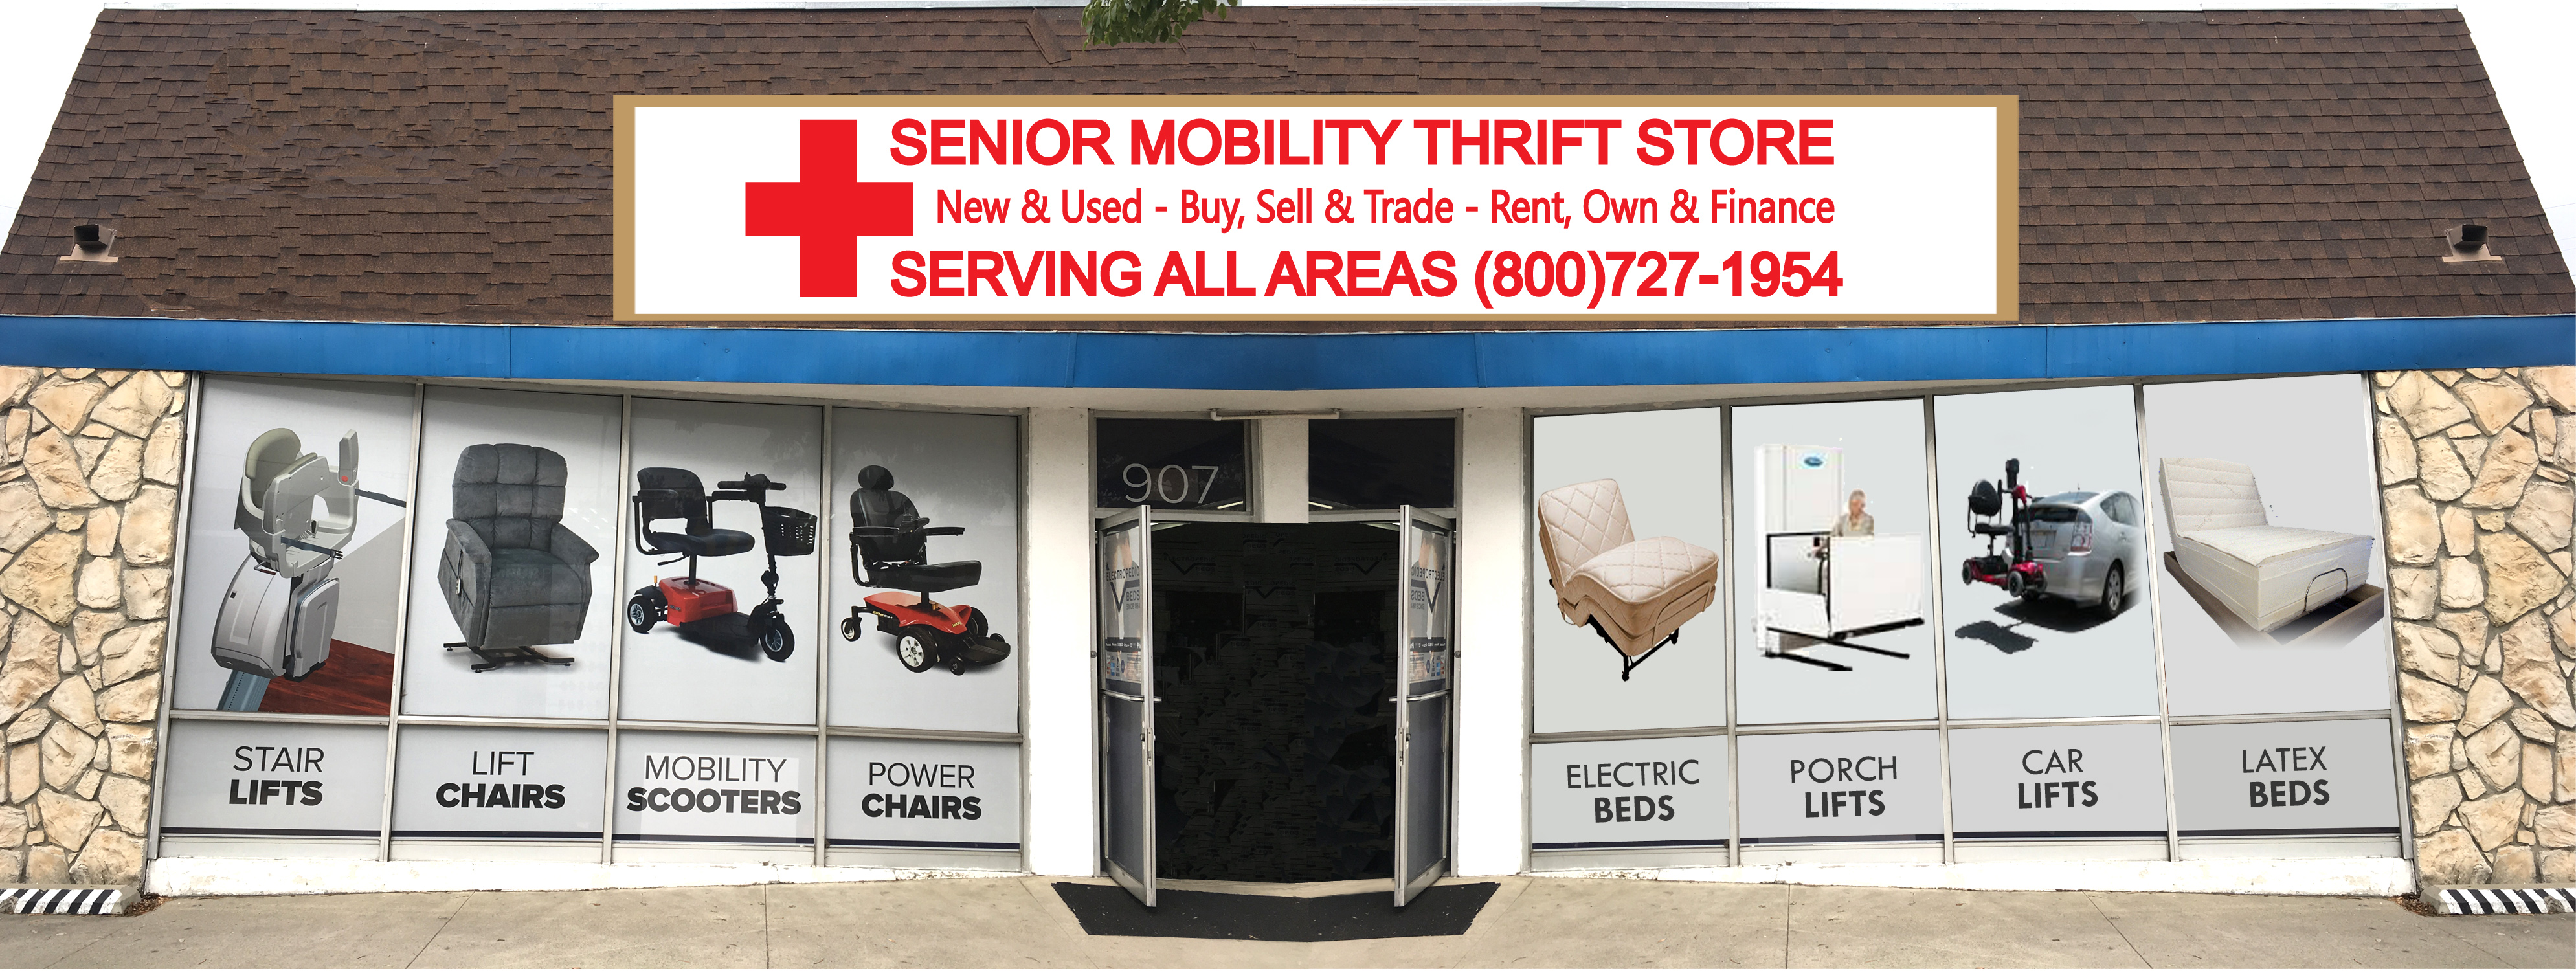 Senior Mobility Thrift Store